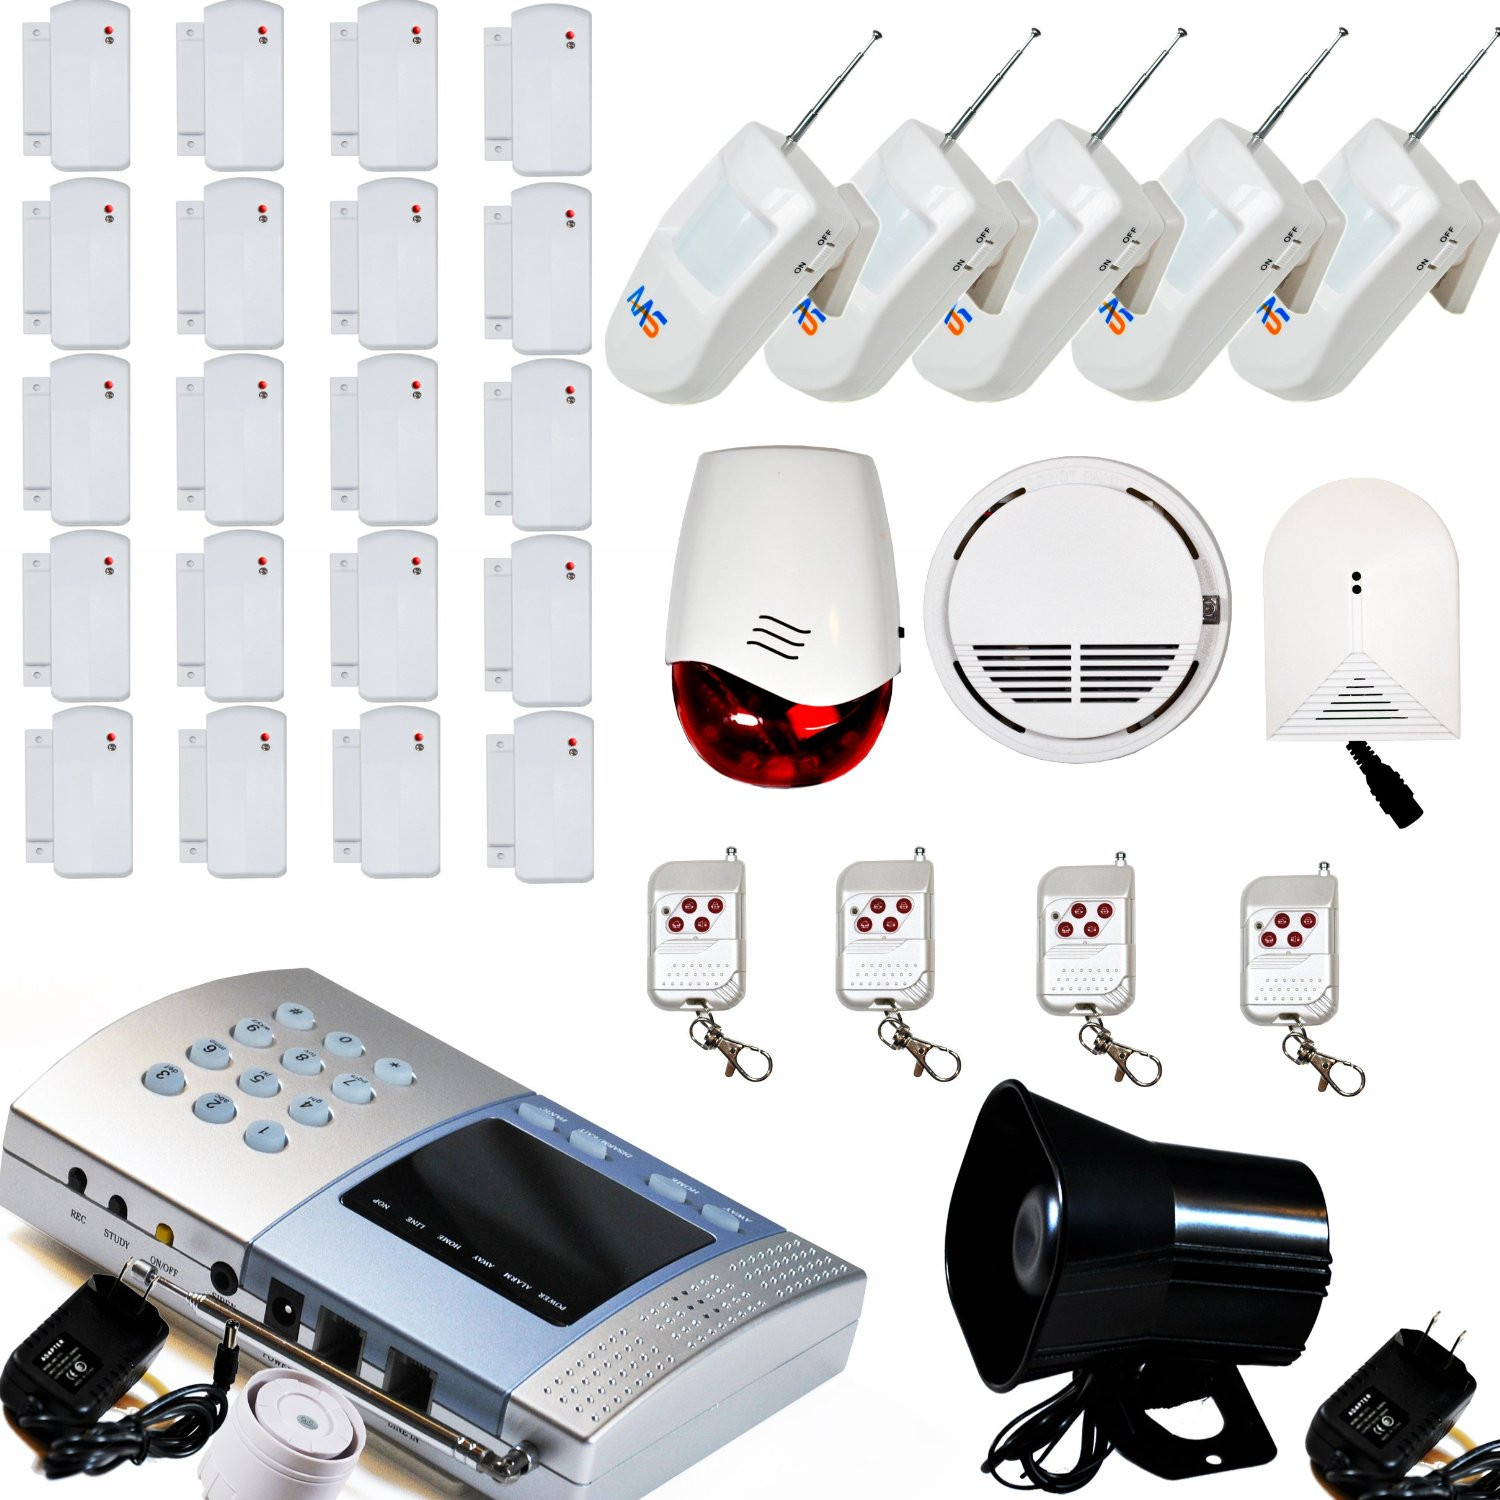 Best DIY Home Alarm System
 AAS V600 Wireless Home Security Alarm System Kit DIY